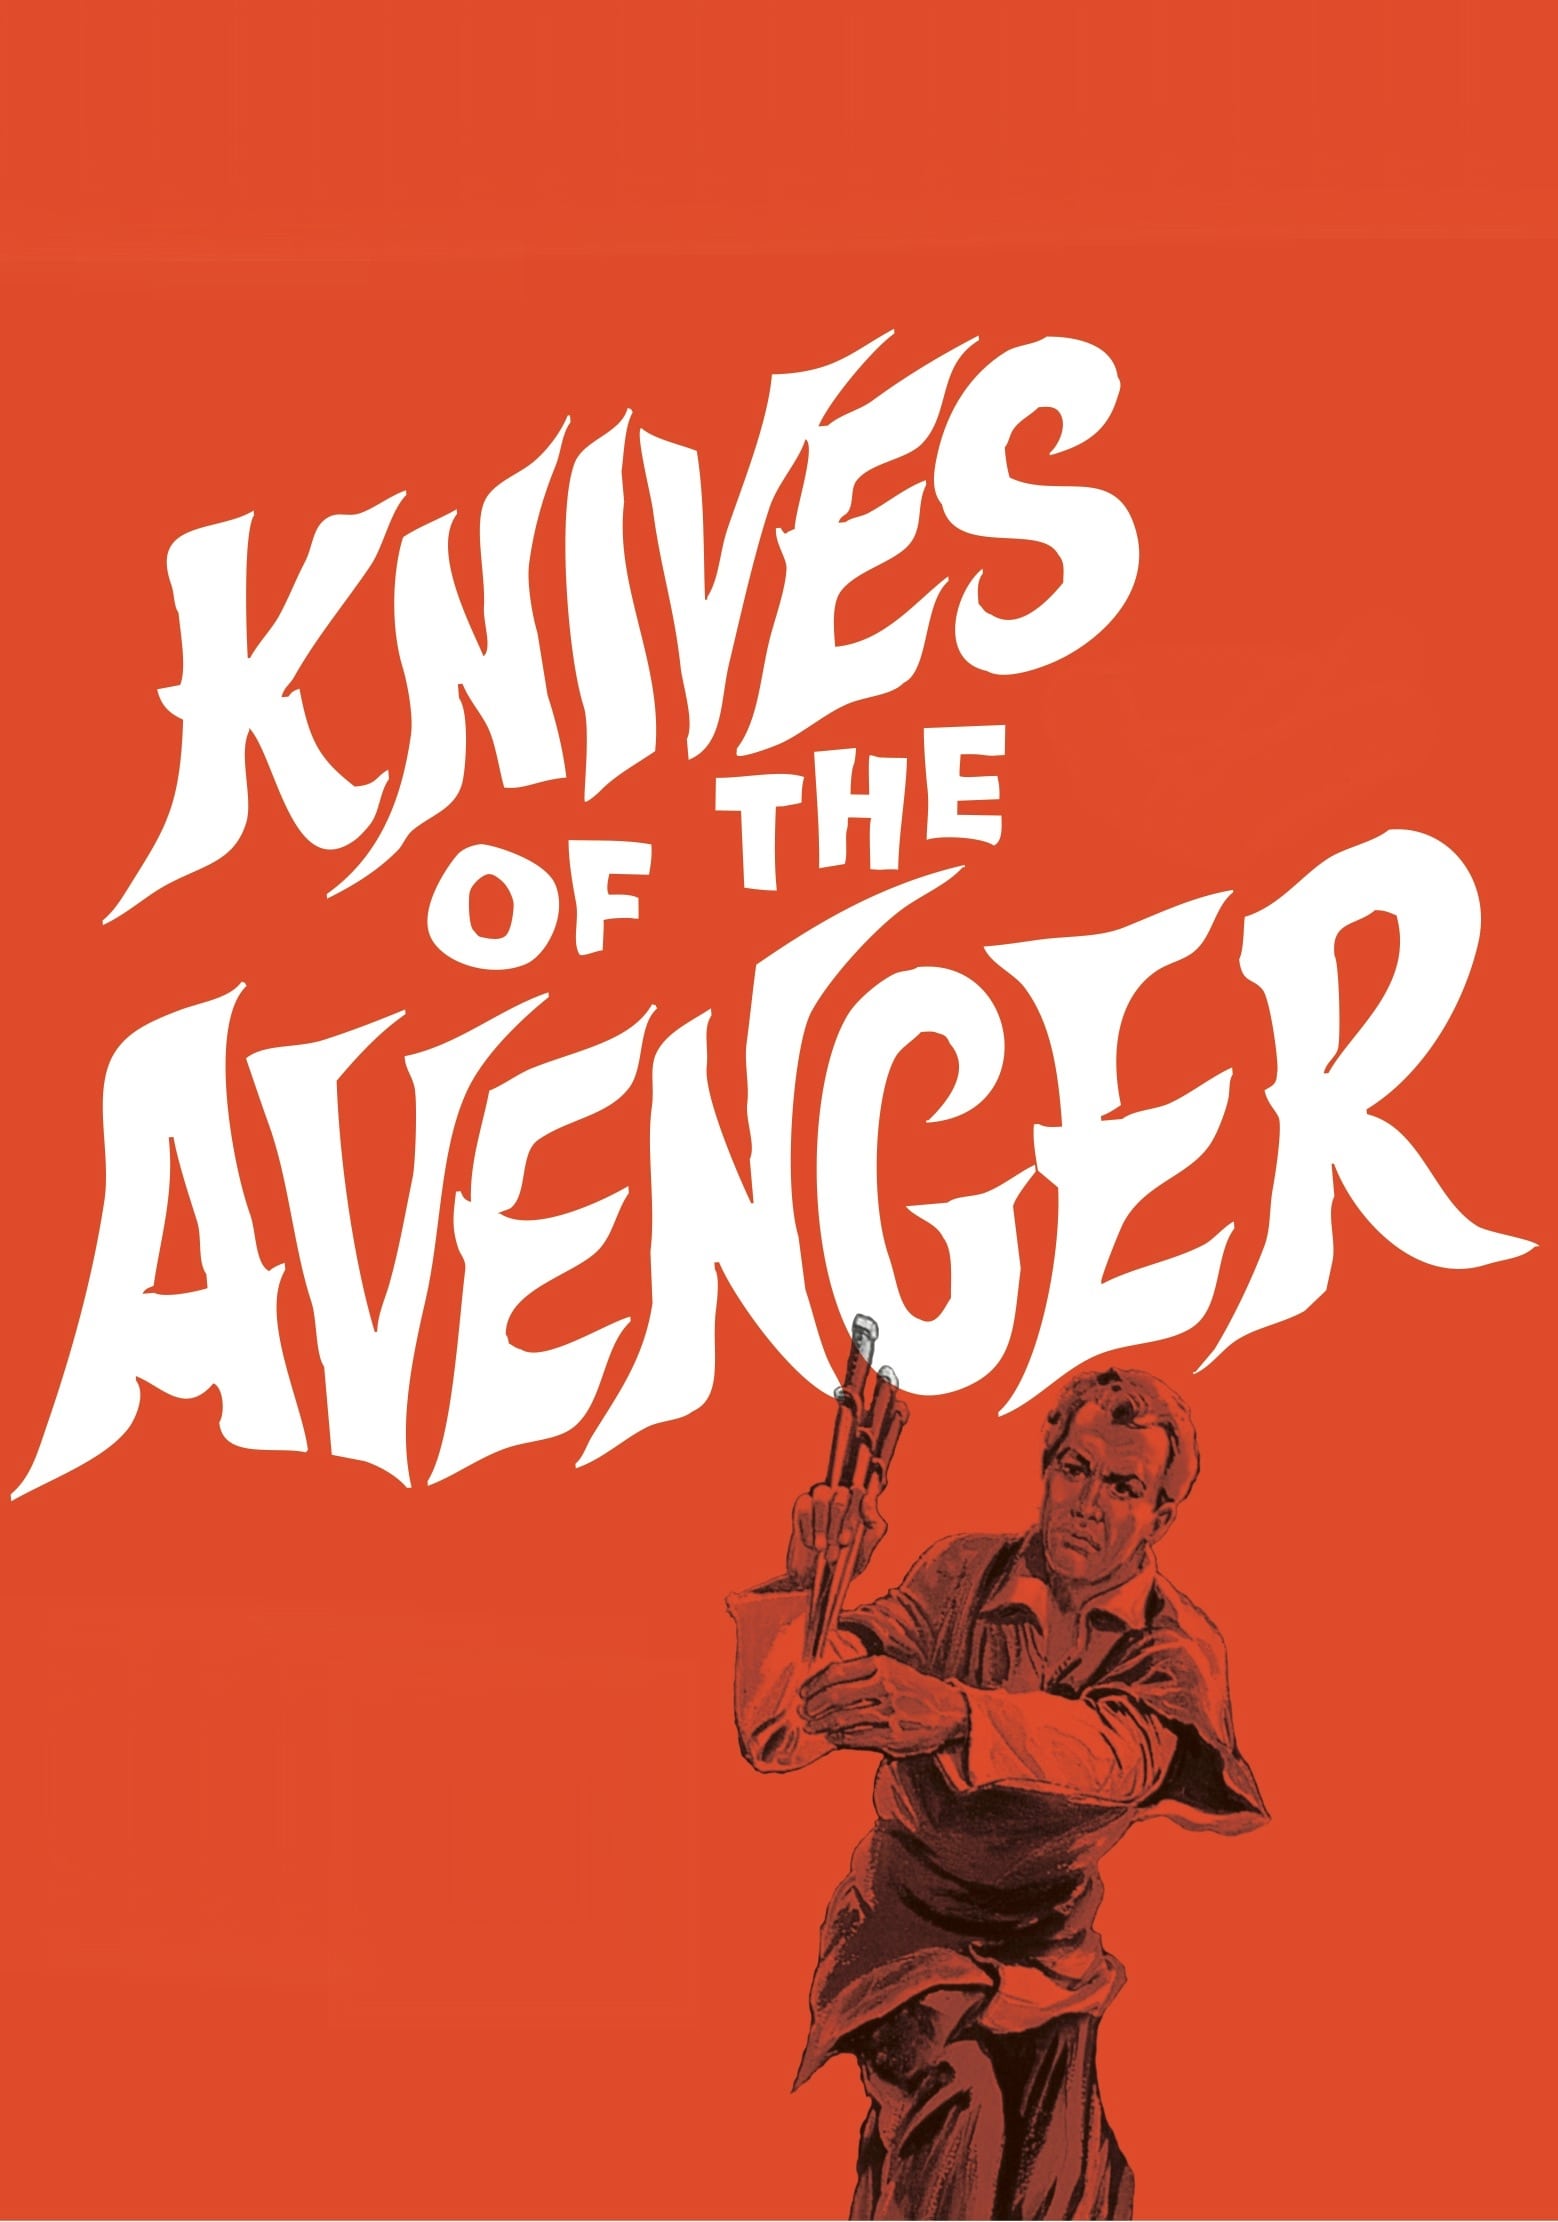 Knives of the Avenger (1966)